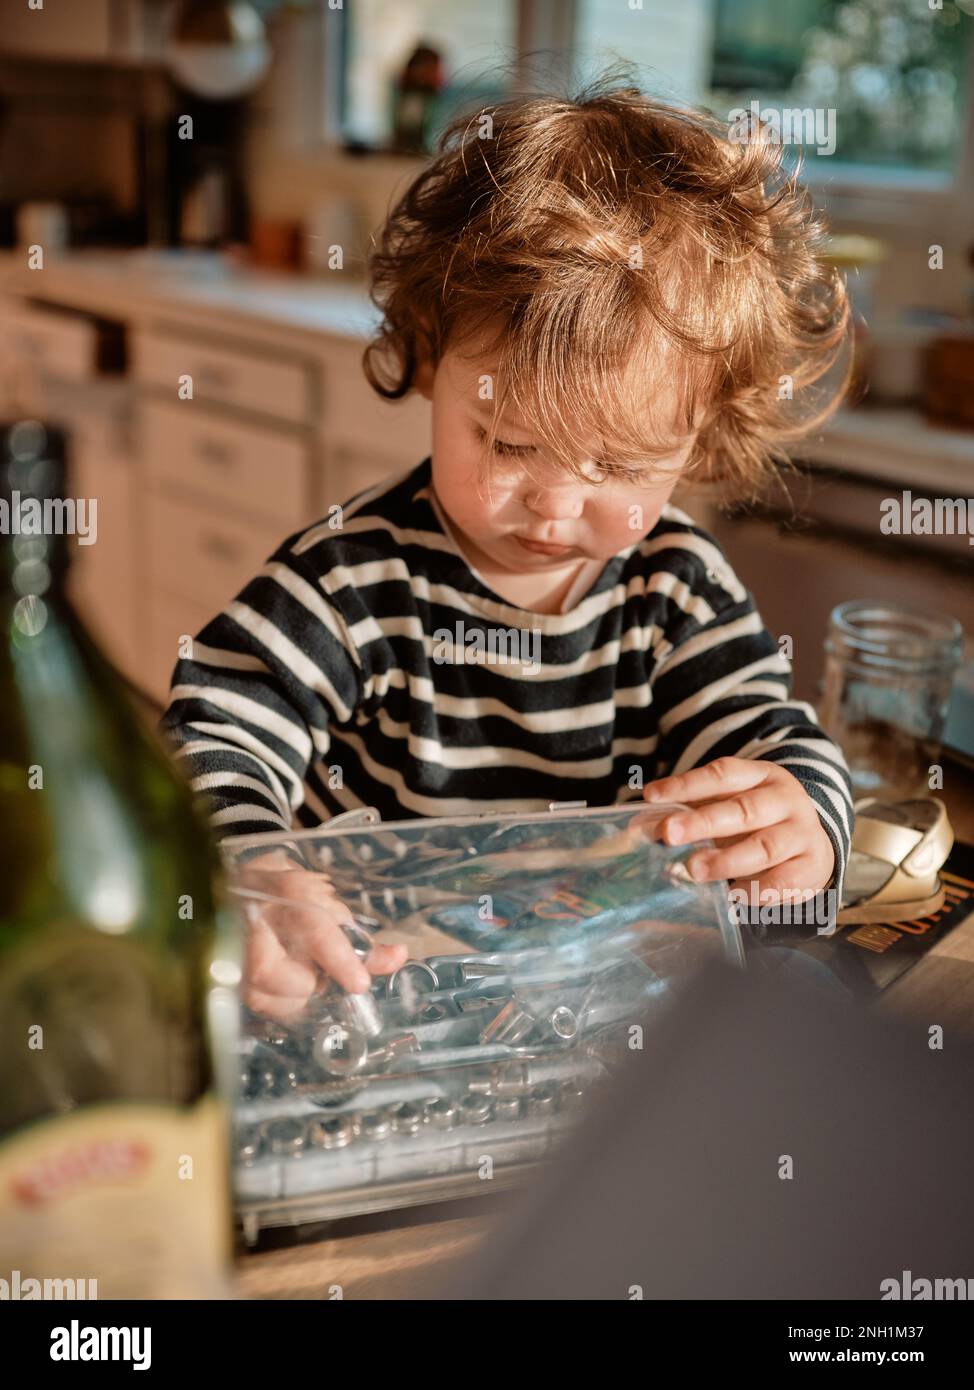 Ein Kleinkind mit gelocktem rotem Haar spielt mit Werkzeugen in einer dreckigen Küche Stockfoto